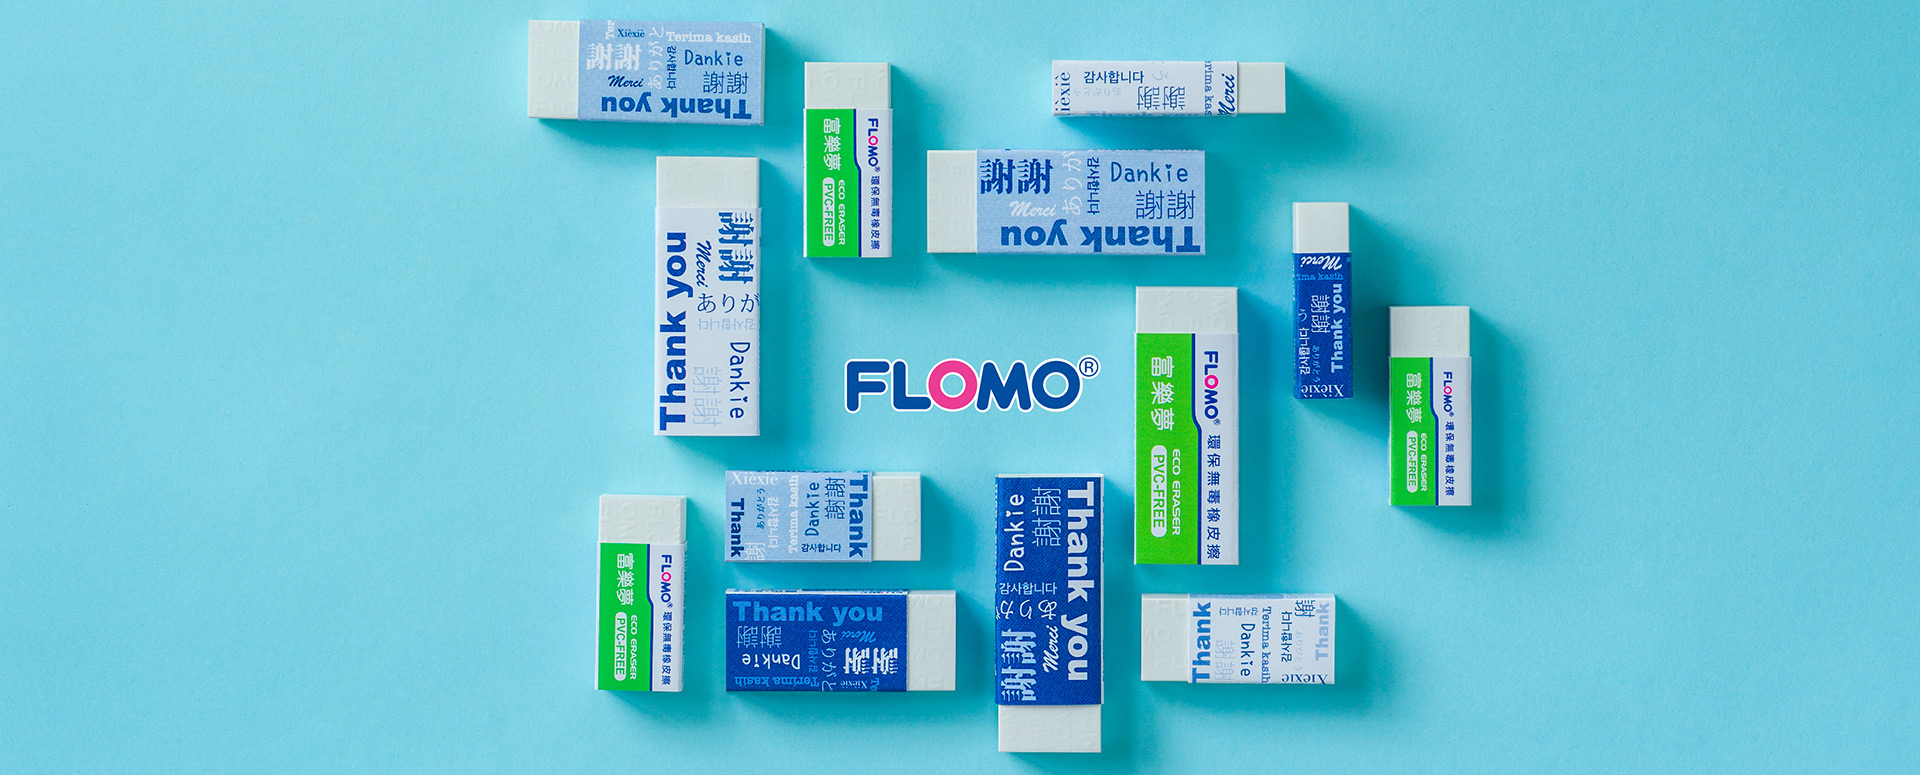 台南橡皮擦客製首選FLOMO富樂夢！環保無毒橡皮擦製造專家